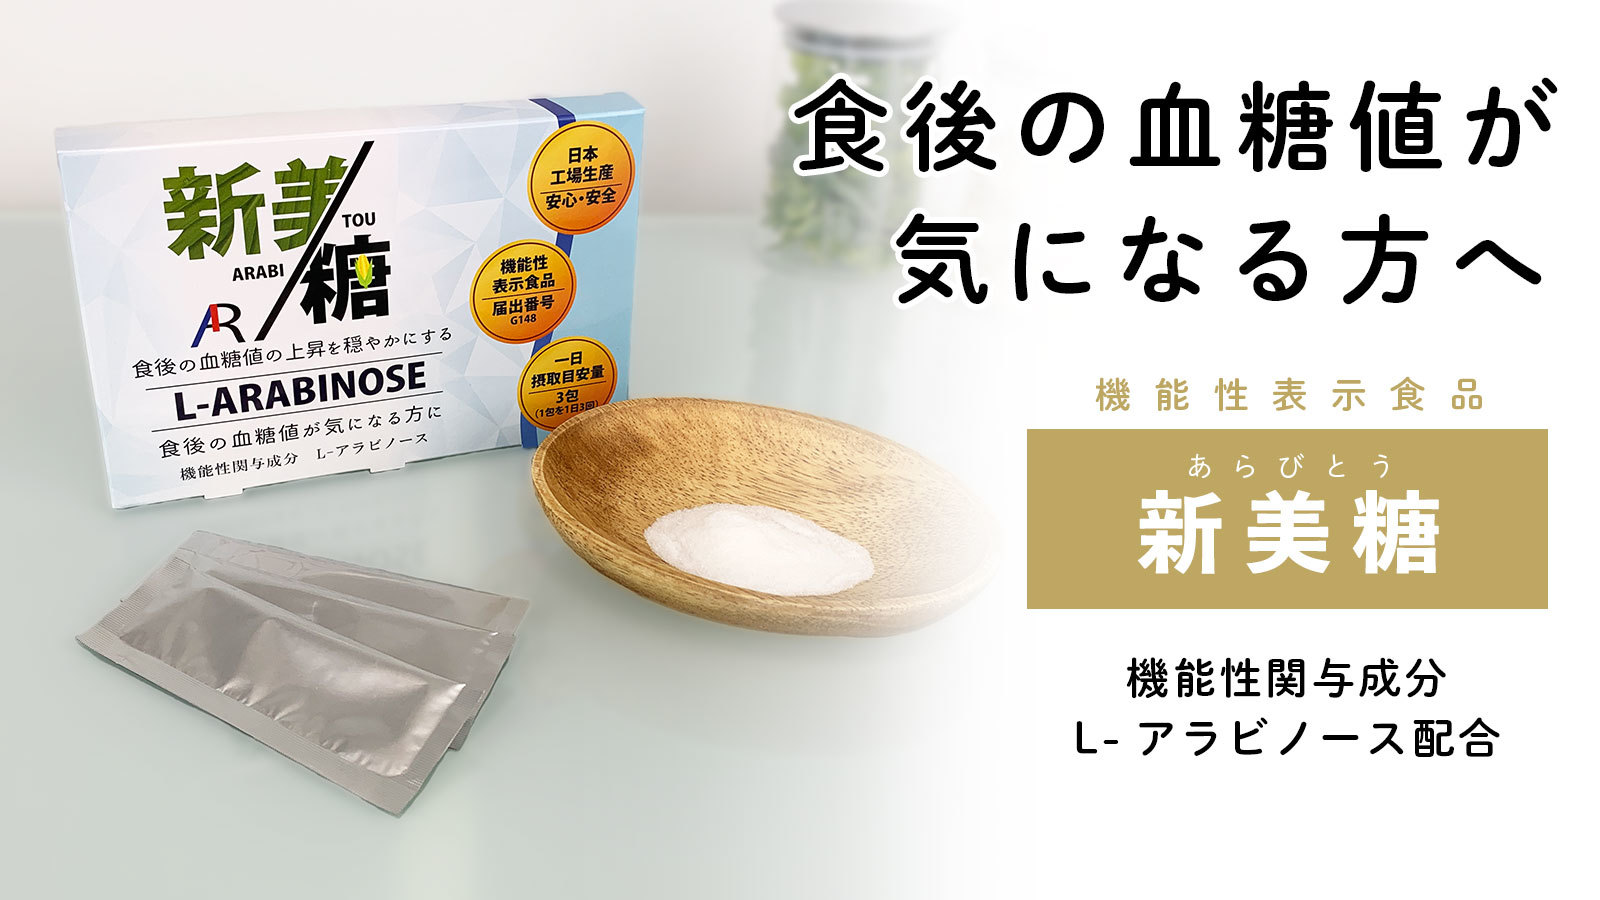 日本初！L-アラビノースの機能性表示食品「新美糖」を10/1発売！
～食後の血糖値の上昇を穏やかにすることが報告されています～